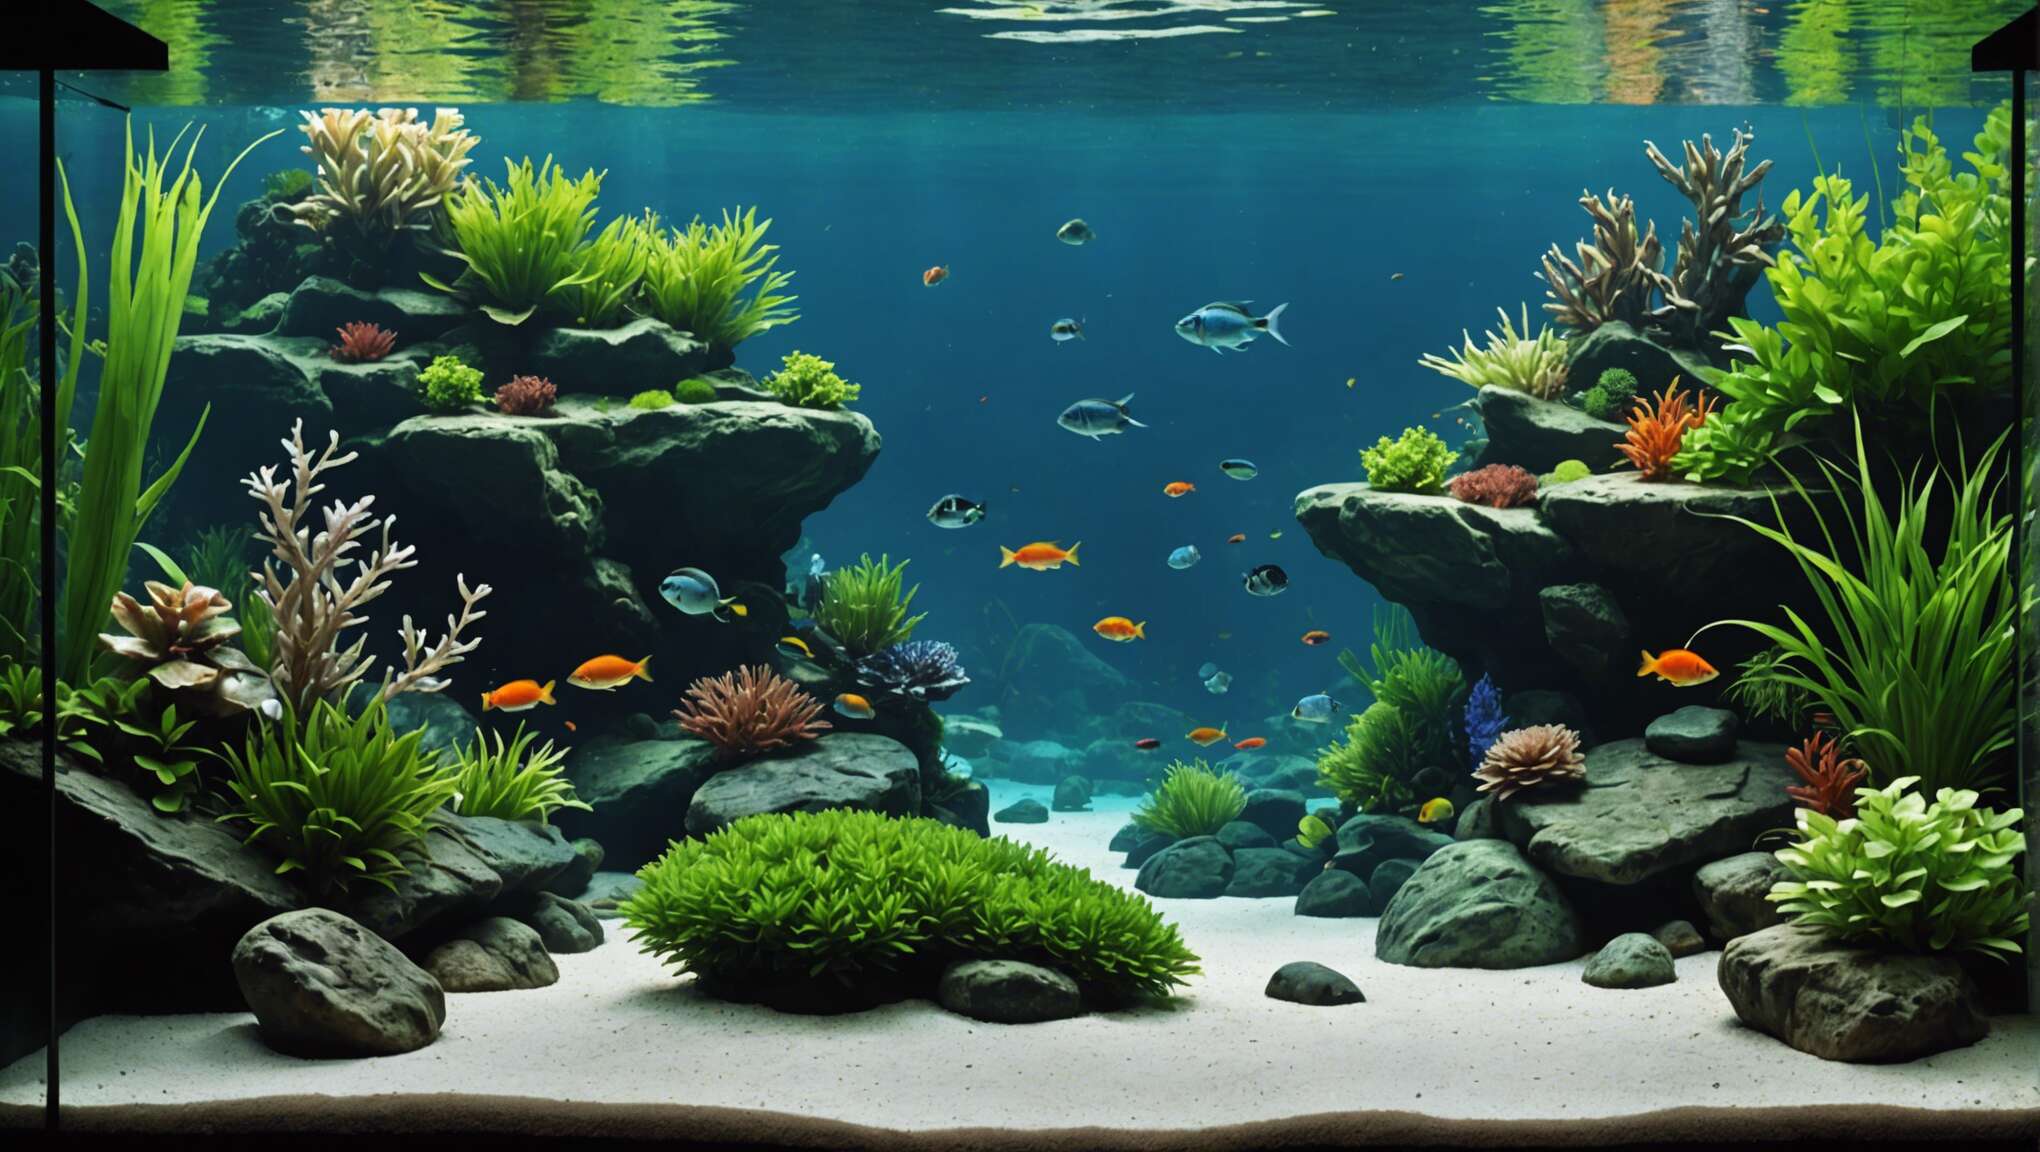 Choisir les roches idéales pour votre aquarium